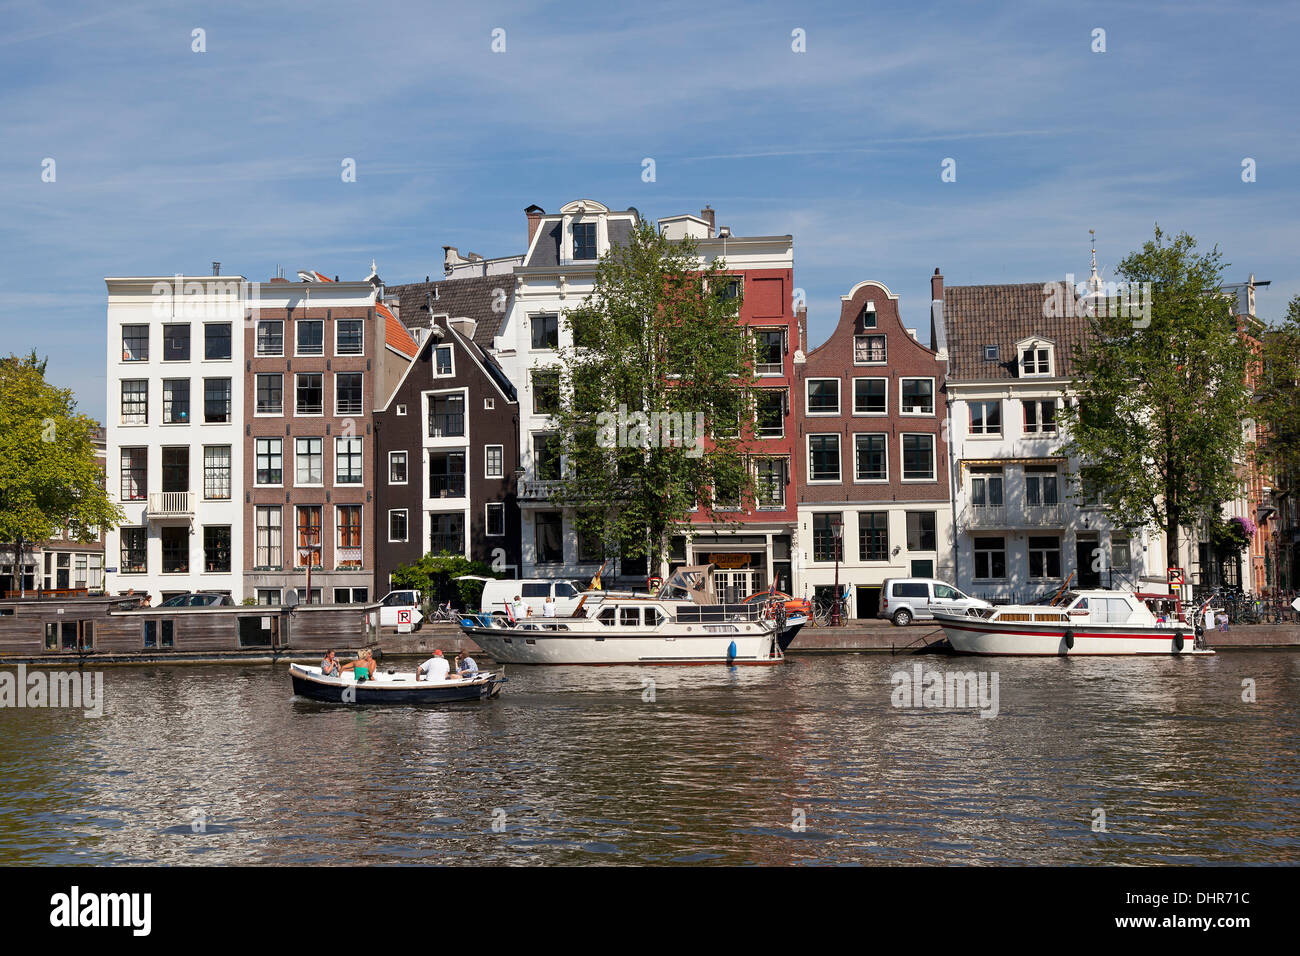 Gite in barca in un canale di Amsterdam con facciate delle case cittadine Olandesi Foto Stock